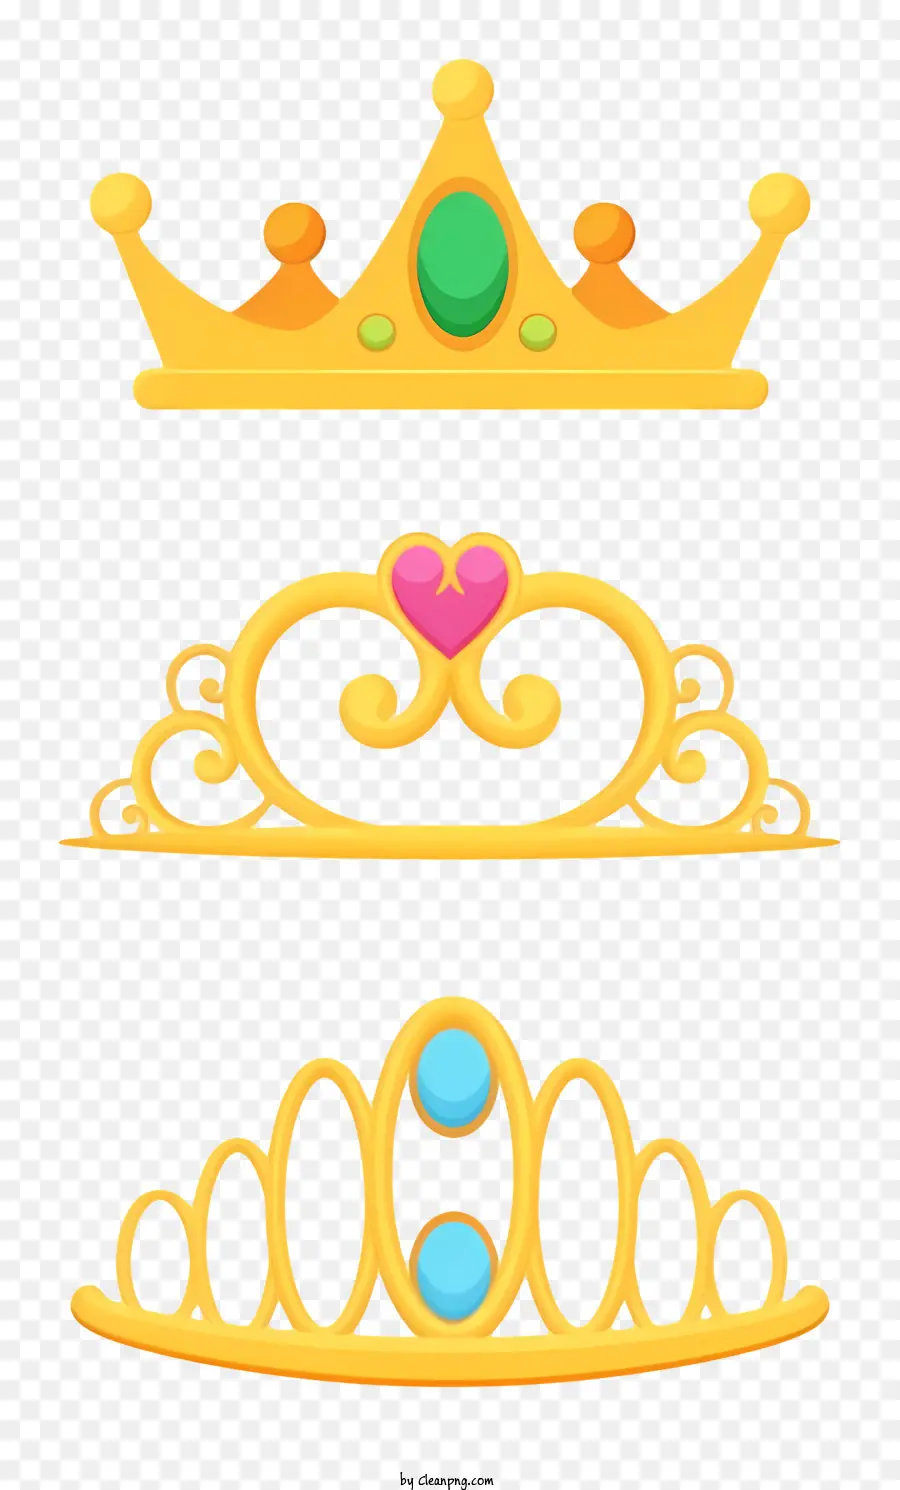 corone dorate corona ingioiellate forme corona taglie coronate corona - Tre corone d'oro di forma, dimensioni e colore variabili